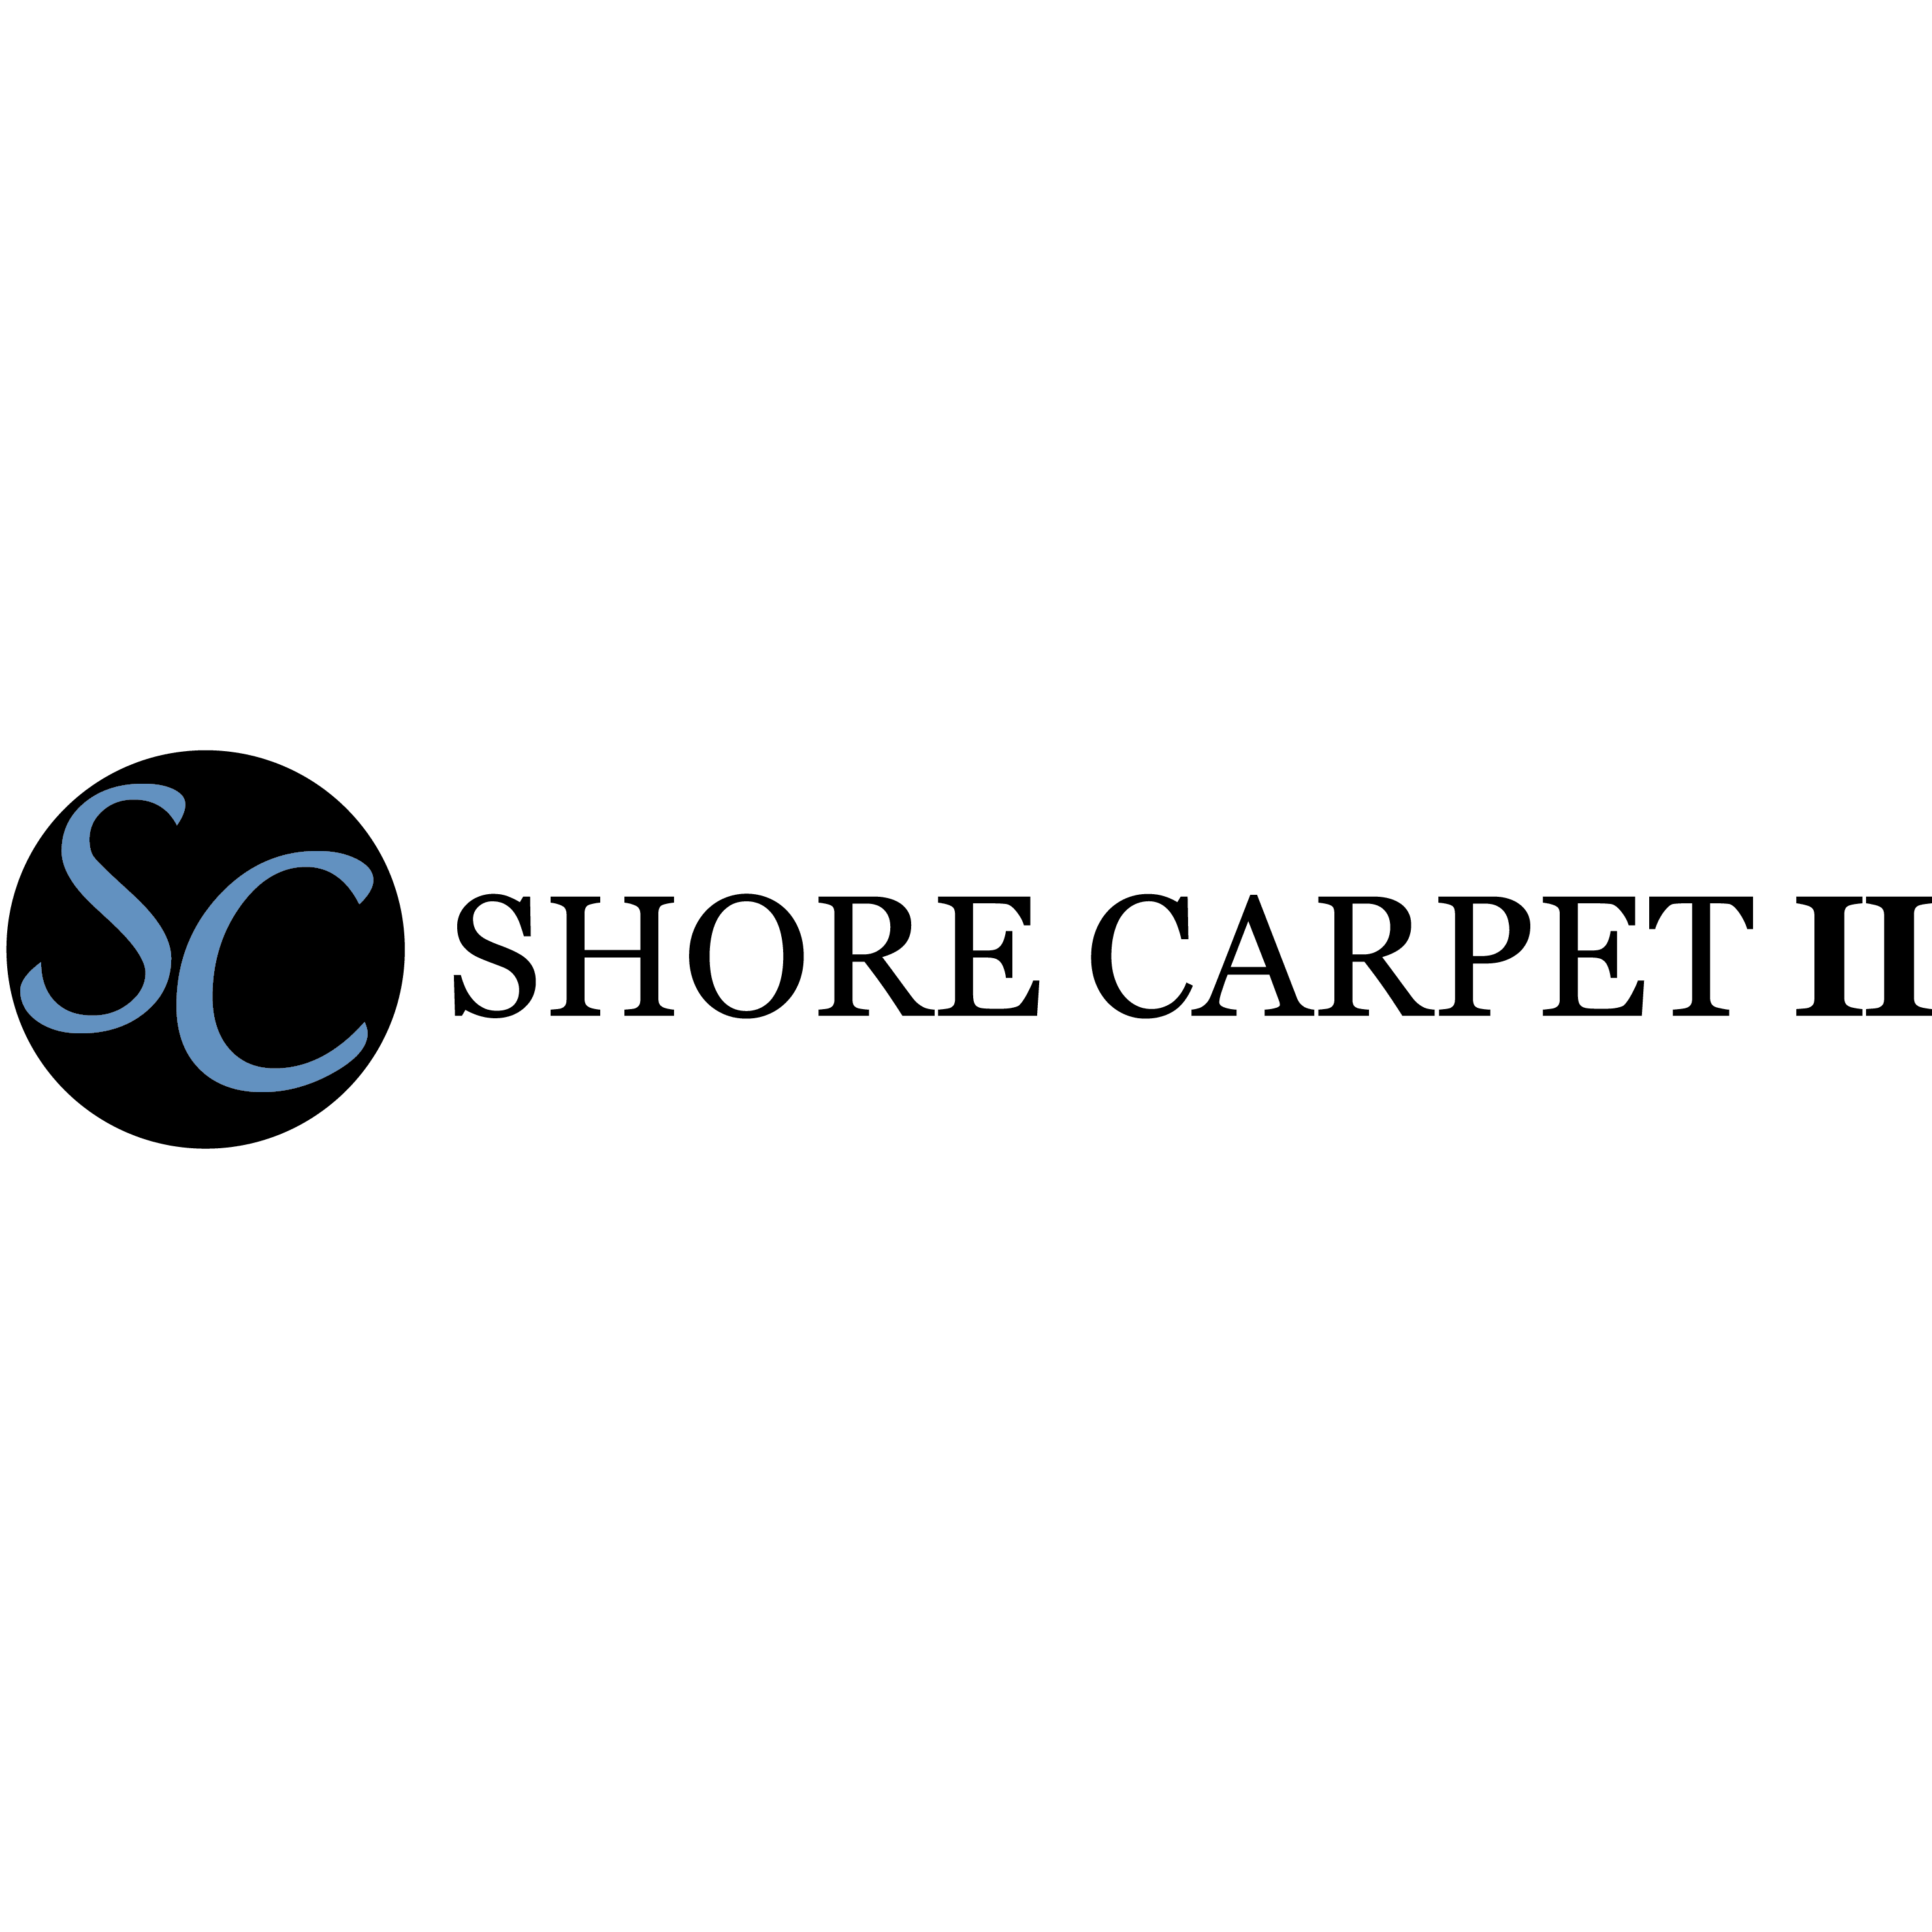 Shore Carpet 2 - Cleveland, OH 44119 - (216)531-9105 | ShowMeLocal.com